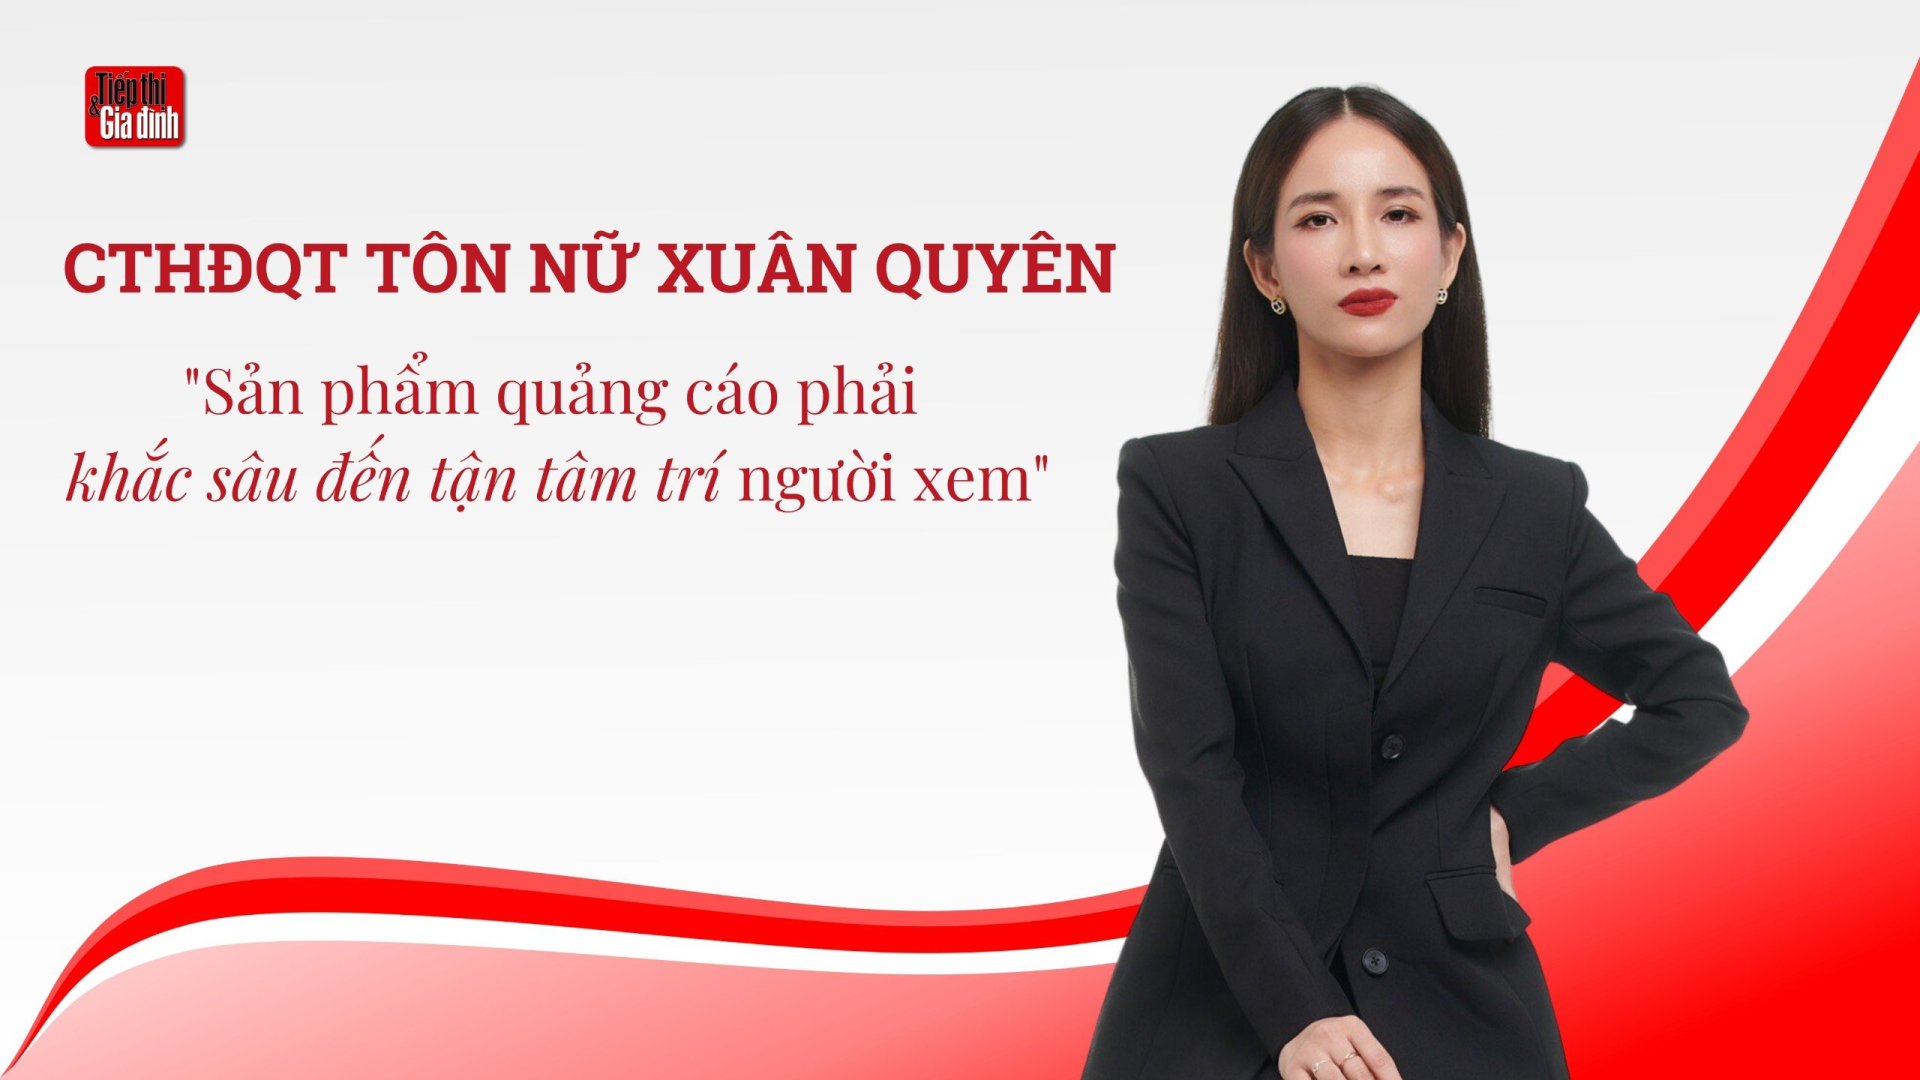 Nữ giám khảo quyền lực của Giải thưởng Quảng cáo Sáng tạo Việt Nam: “Thay đổi suy nghĩ của công chúng là tiêu chí hàng đầu”